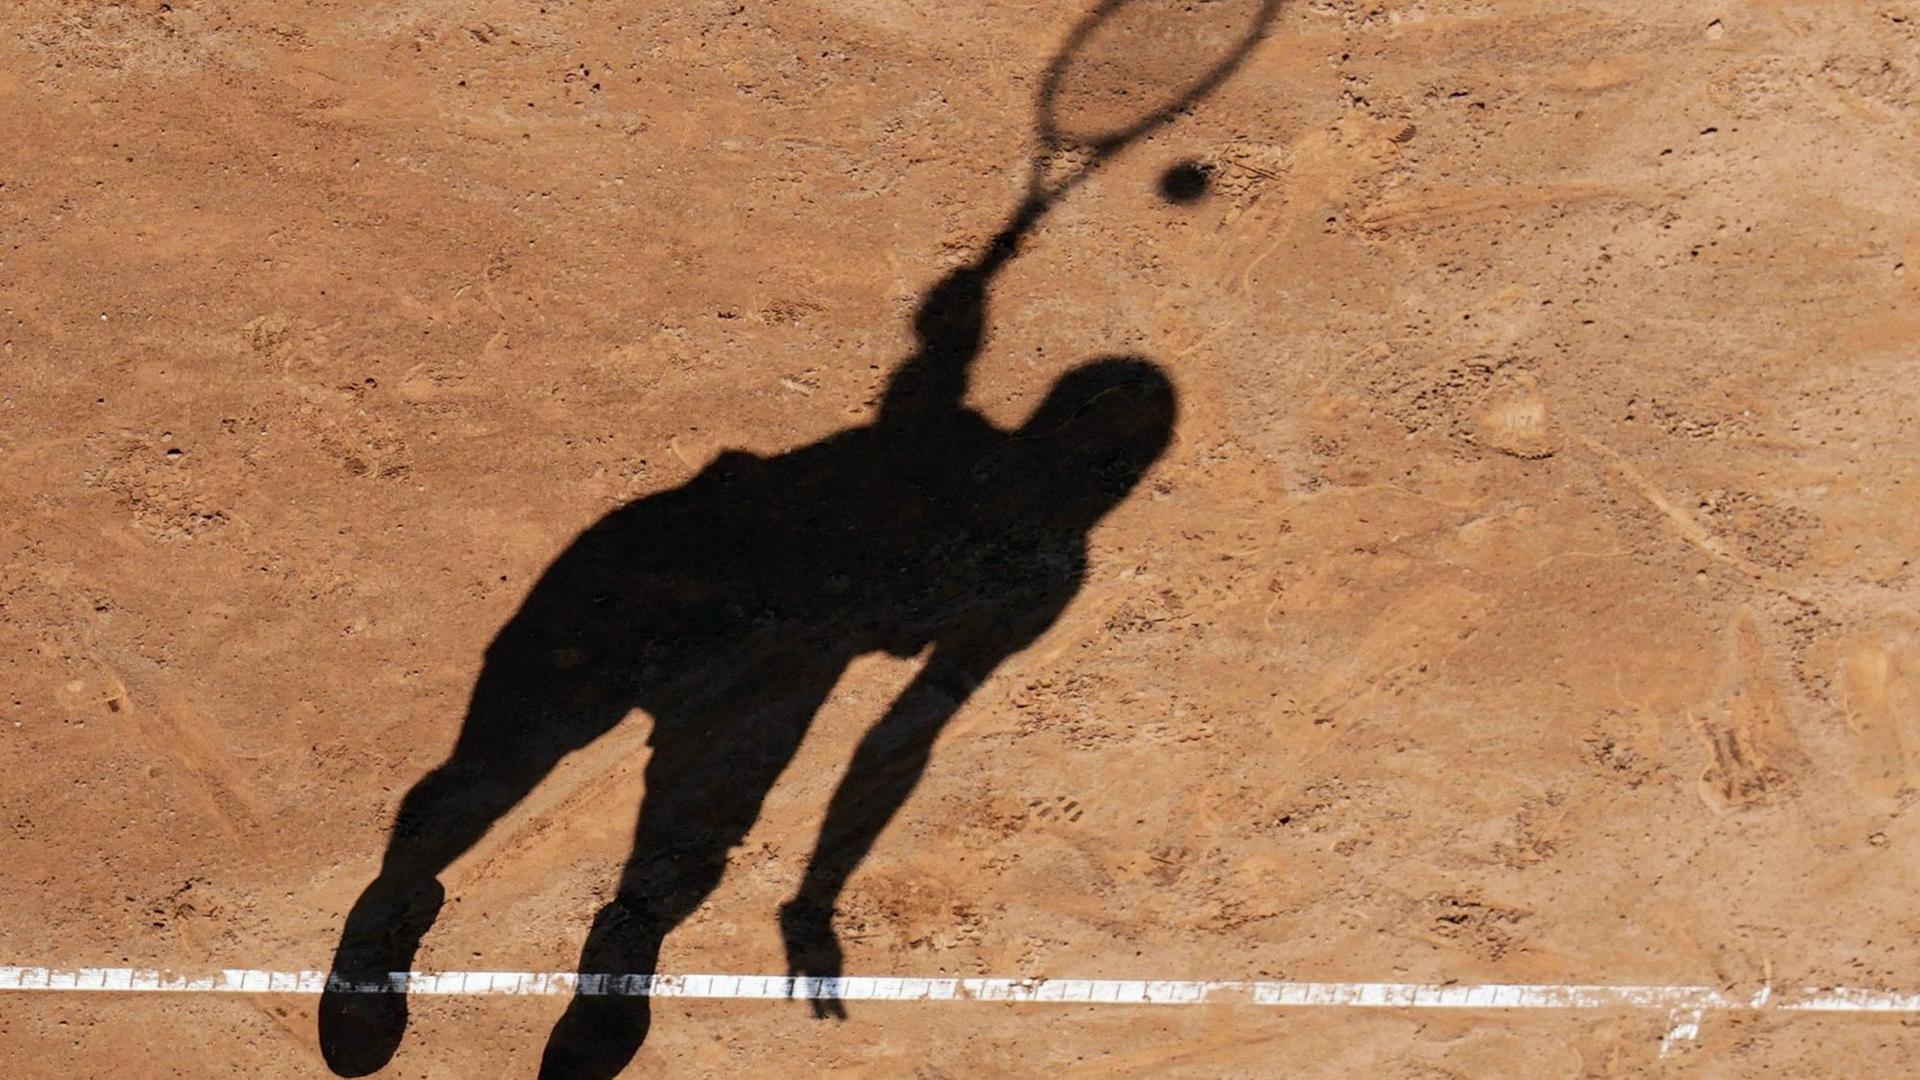 Der Schatten eines Tennisspielers beim Aufschlag auf einem Sandplatz.